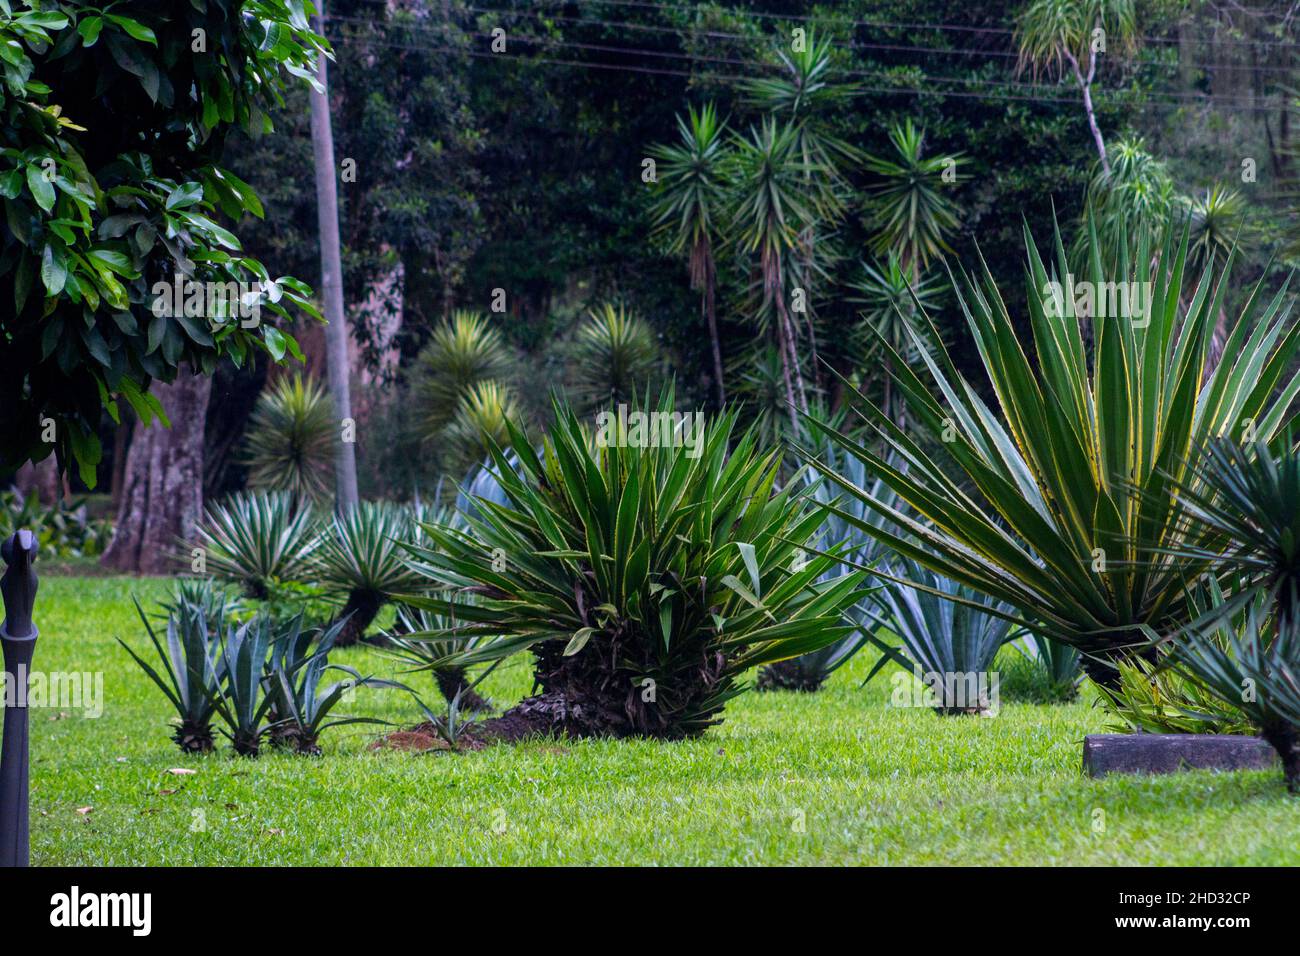 plant known as pita or cigar tree in a garden in Rio de Janeiro Brazil. Stock Photo